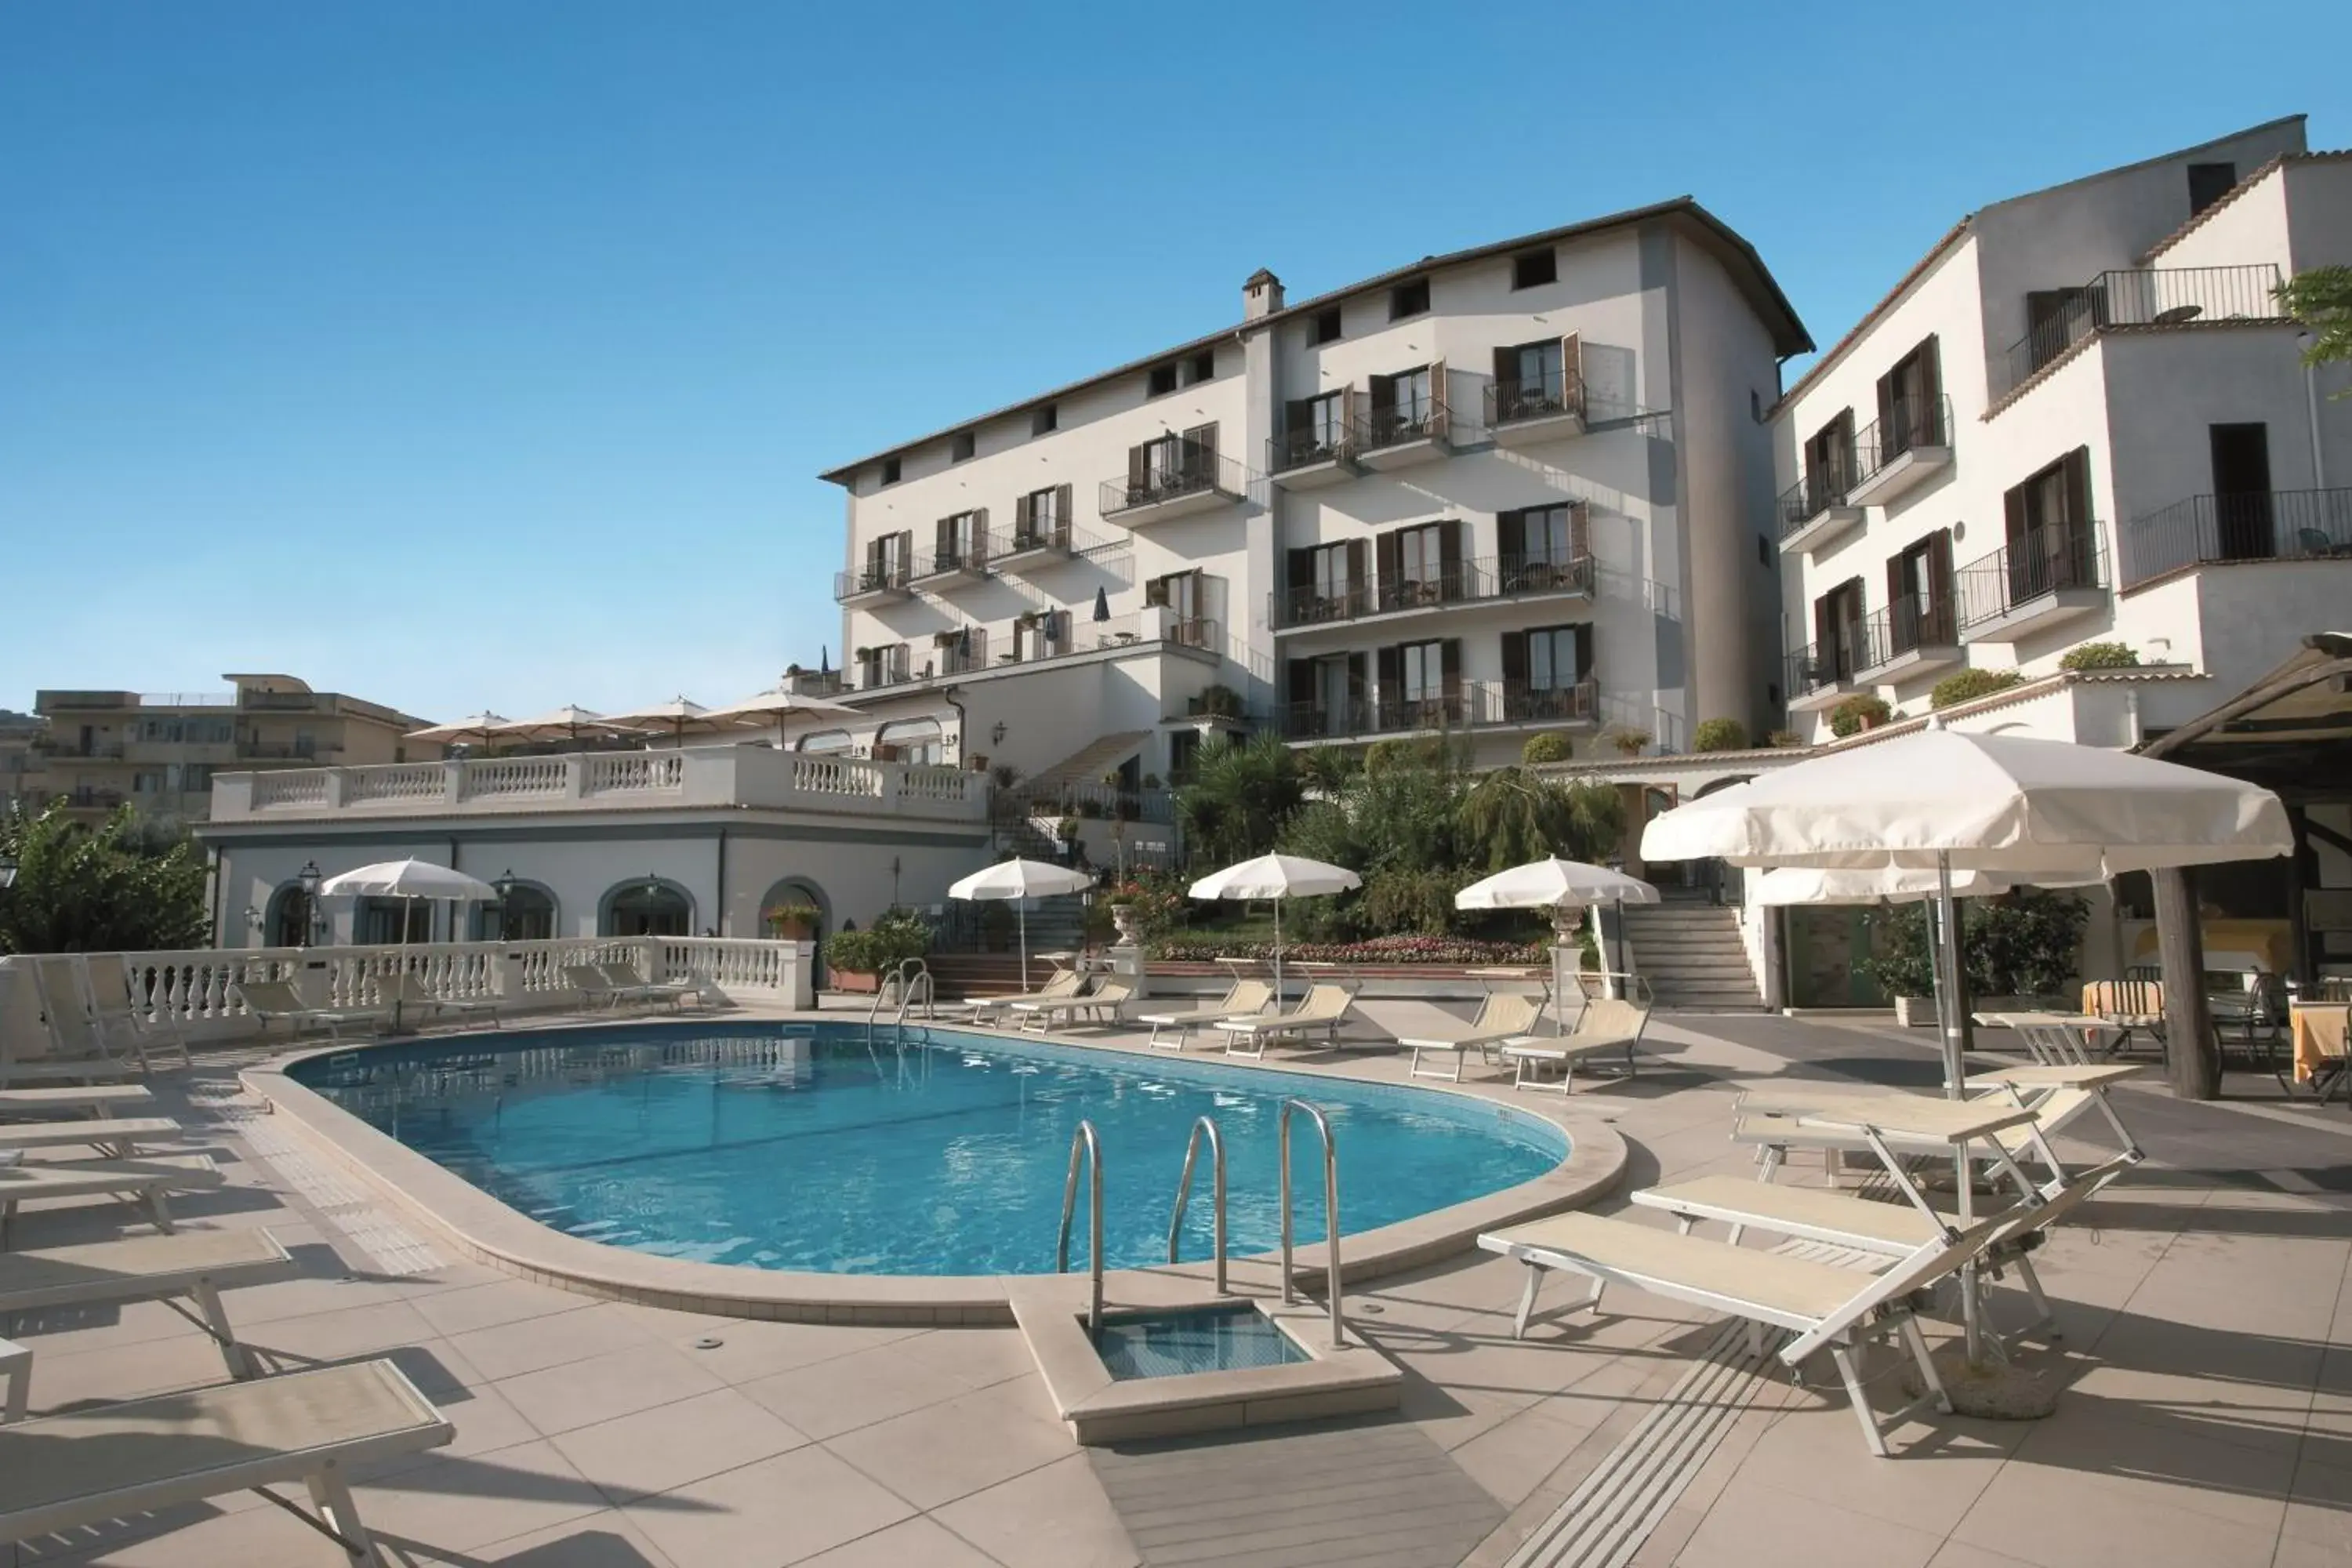 Swimming Pool in Hotel Jaccarino